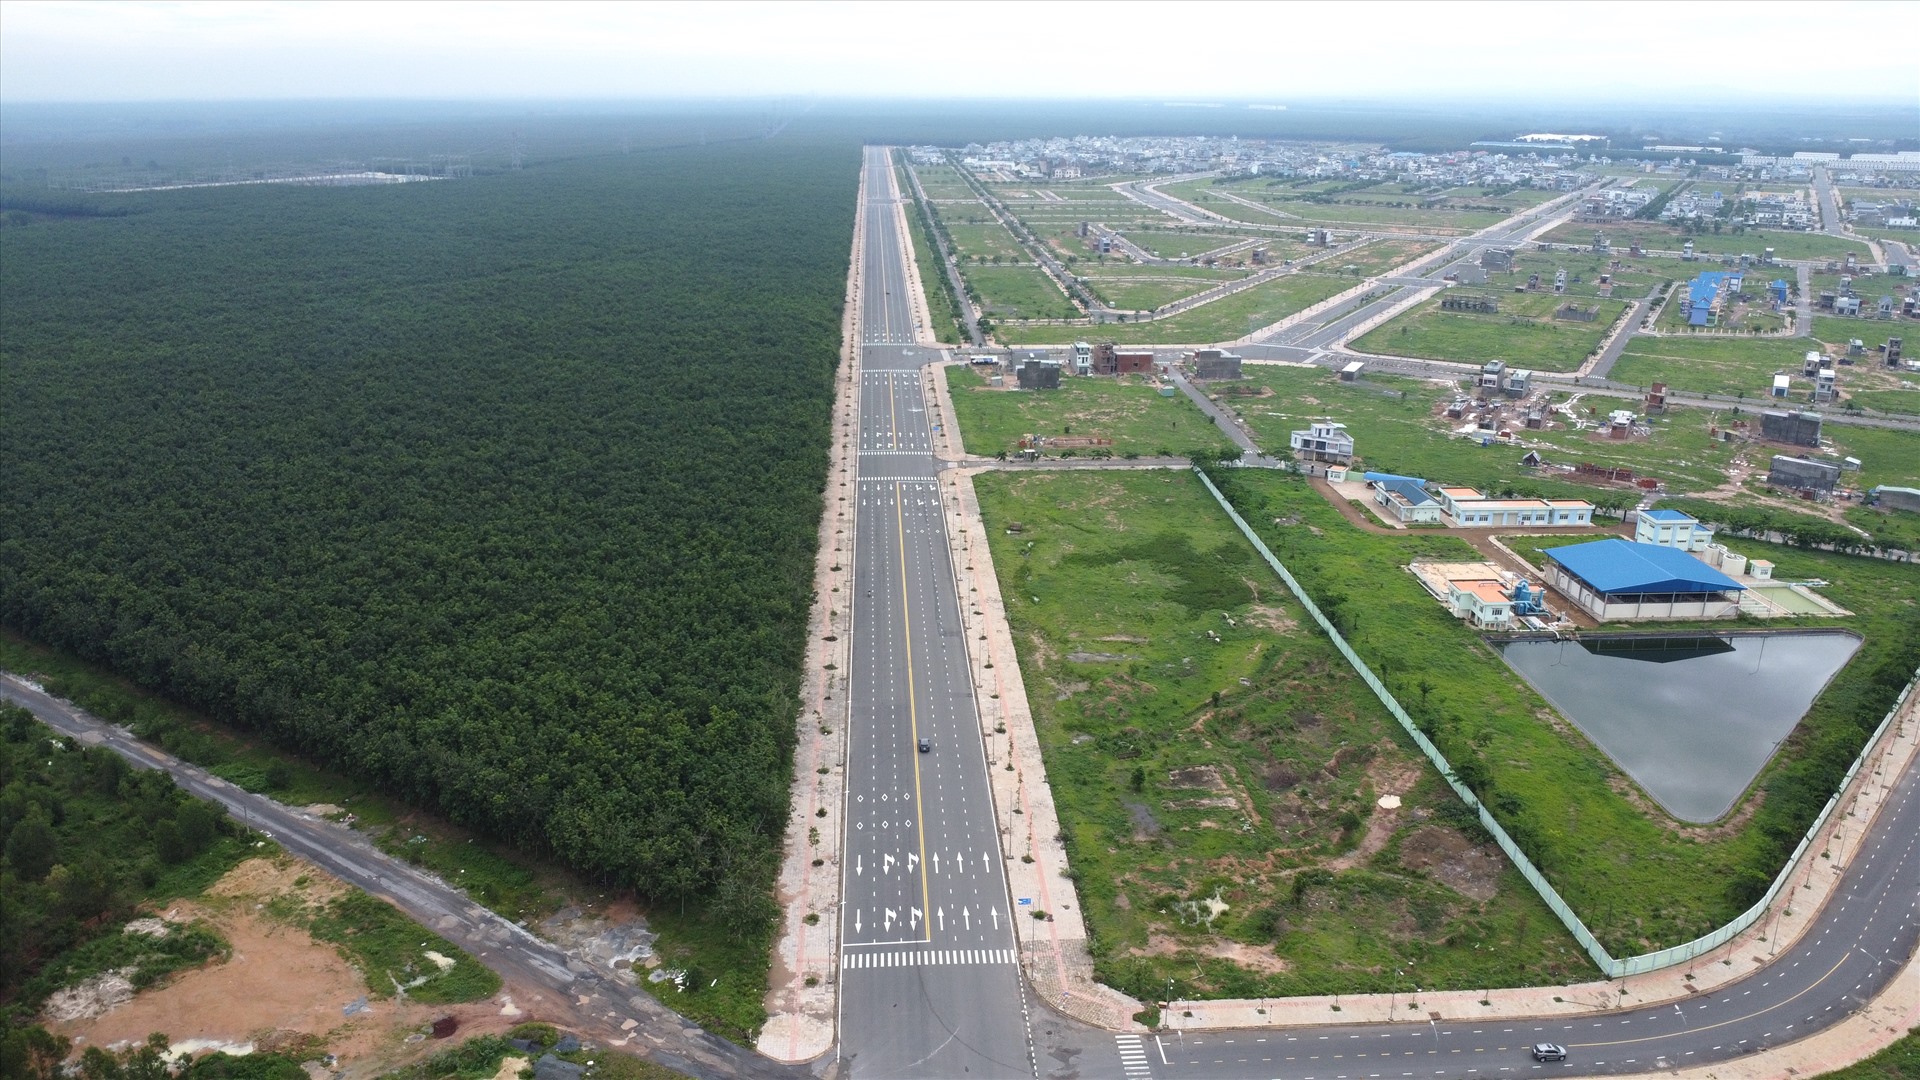 Hiện nay, Đồng Nai đang tiếp tục thực hiện bồi thường, hỗ trợ, di dời người dân ở giai đoạn 1 và giai đoạn 2 của dự án sân bay Long Thành tới khu tái định cư Lộc An - Bình Sơn để an cư, lạc nghiệp.